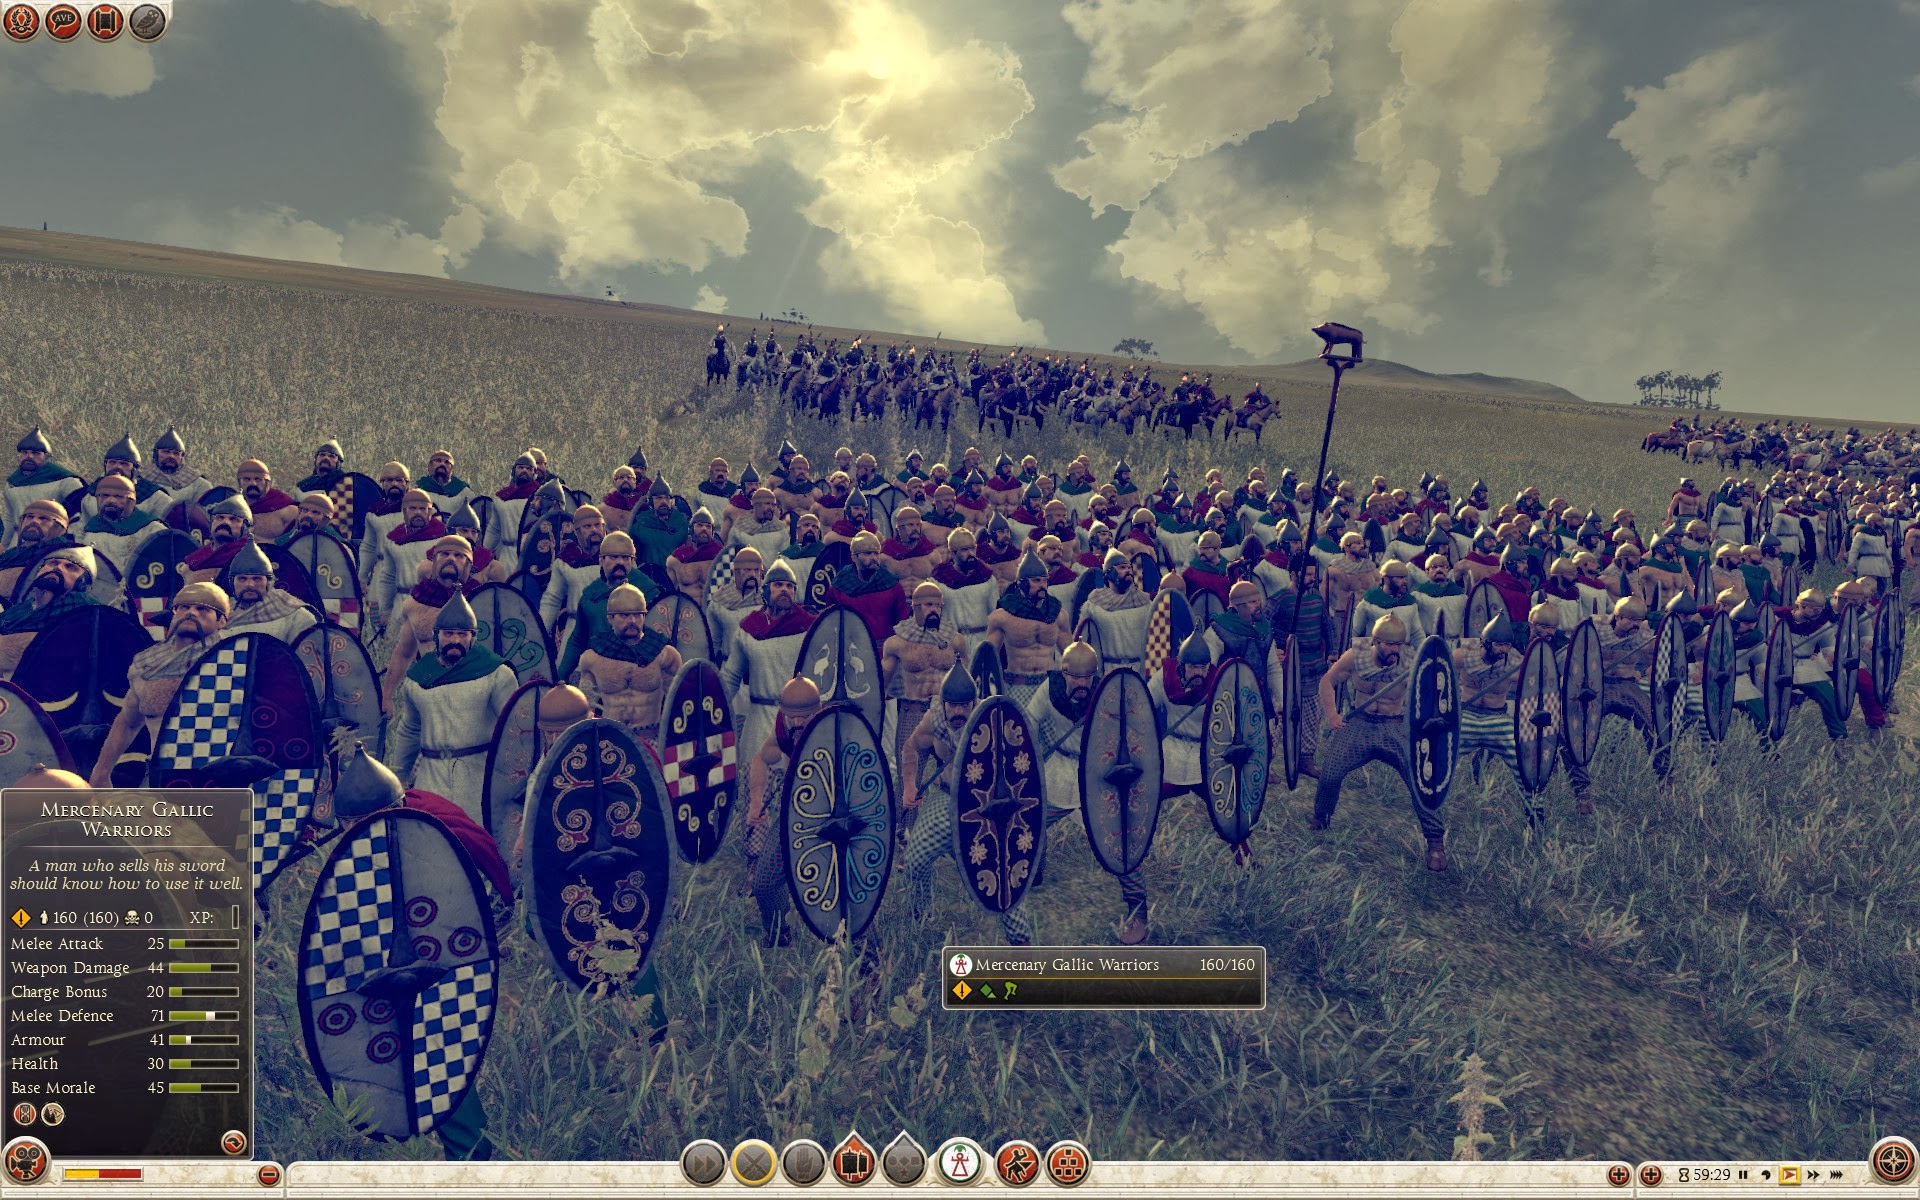 Mercenary Gallic Warriors